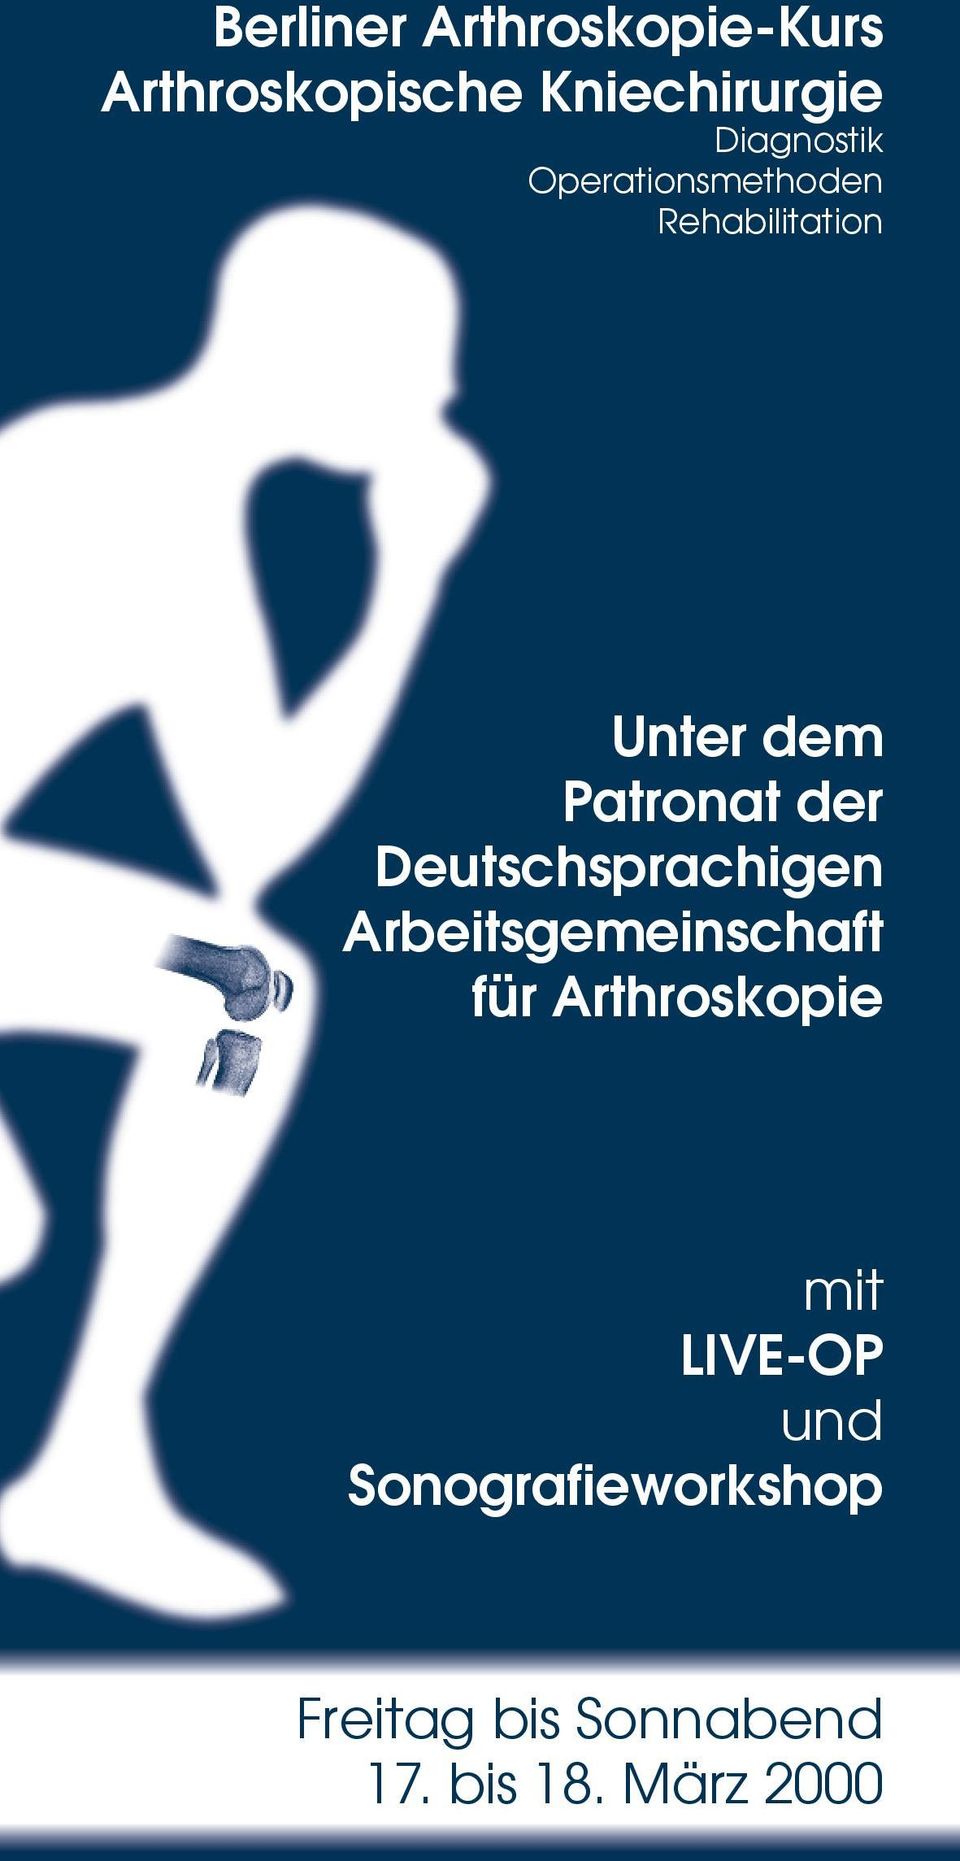 Deutschsprachigen Arbeitsgemeinschaft für Arthroskopie mit